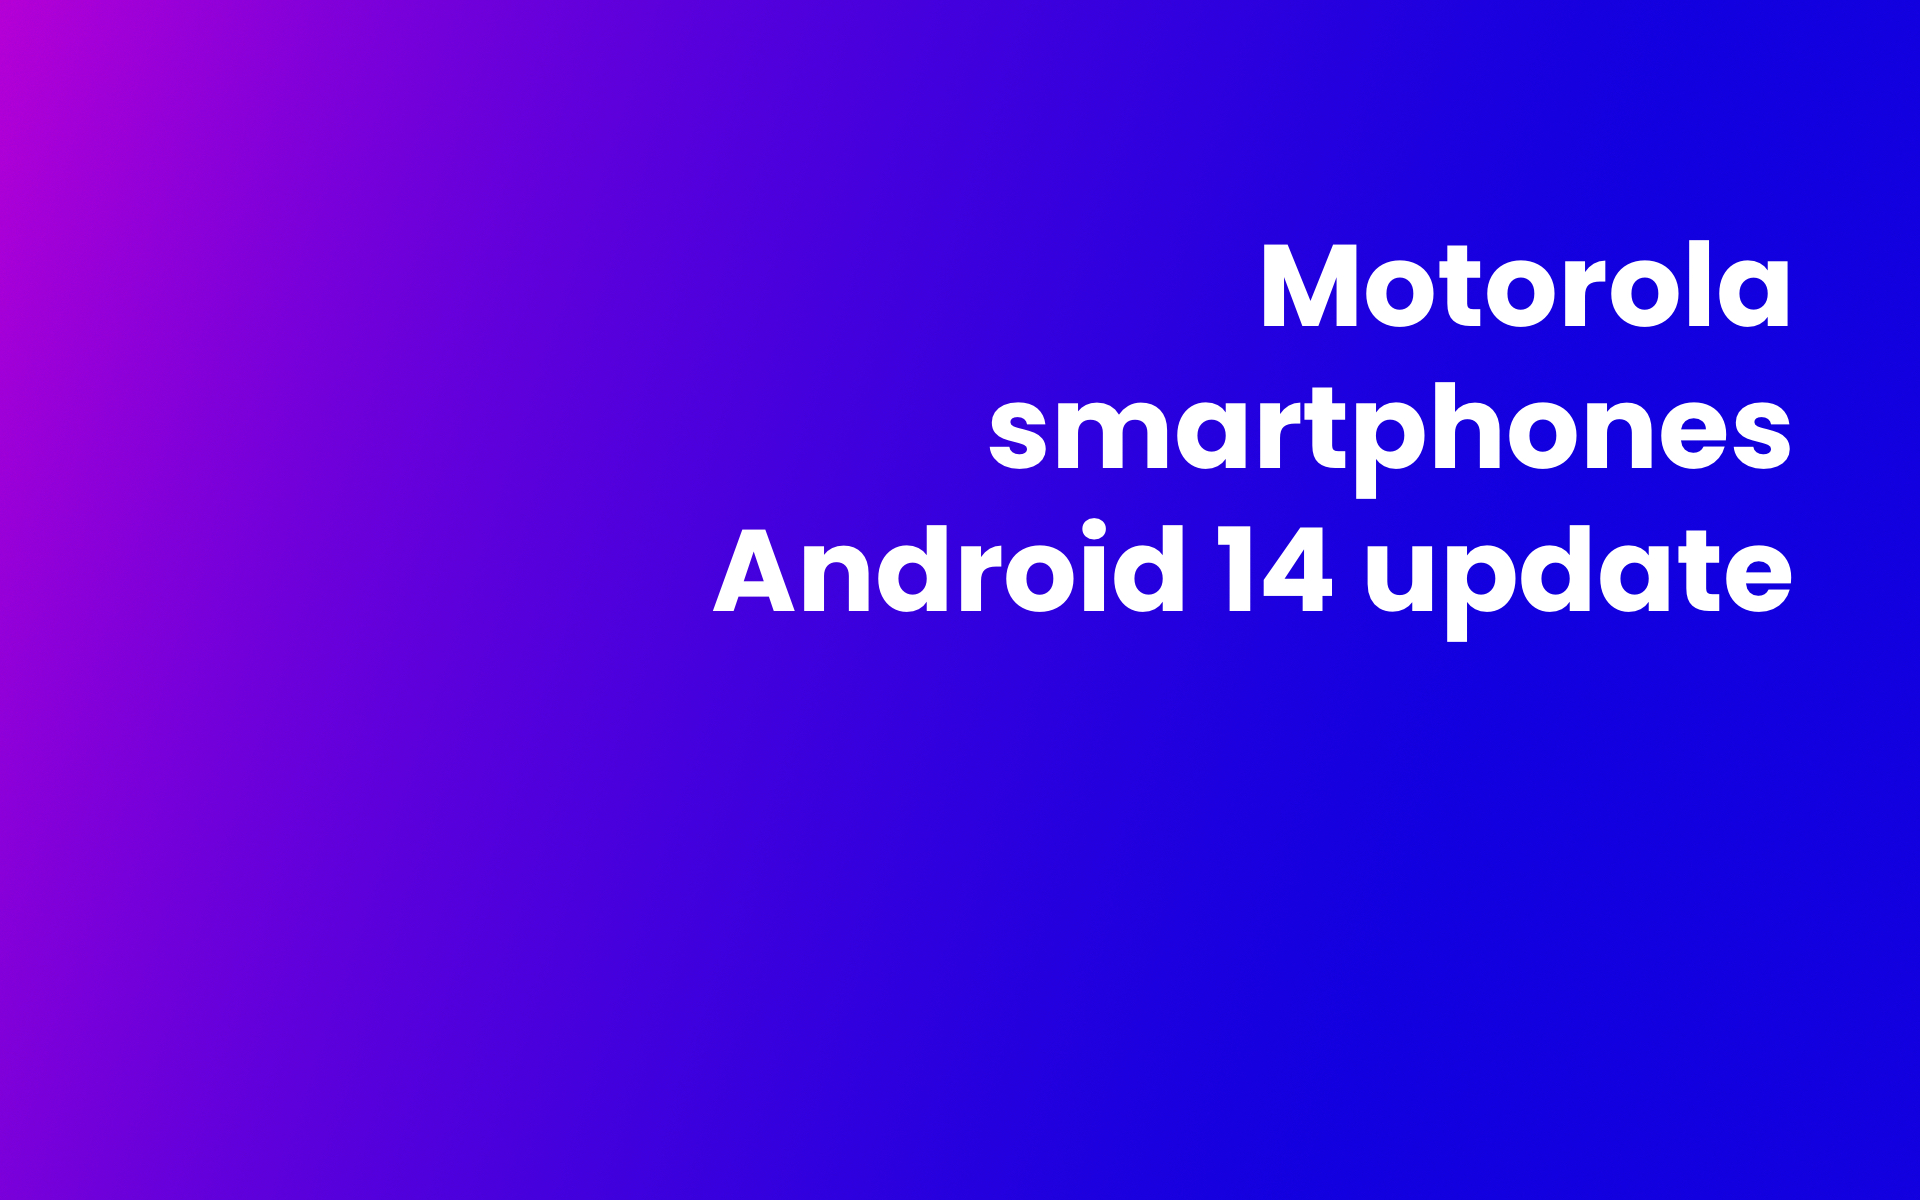 Motorola smartphones Android 14 update